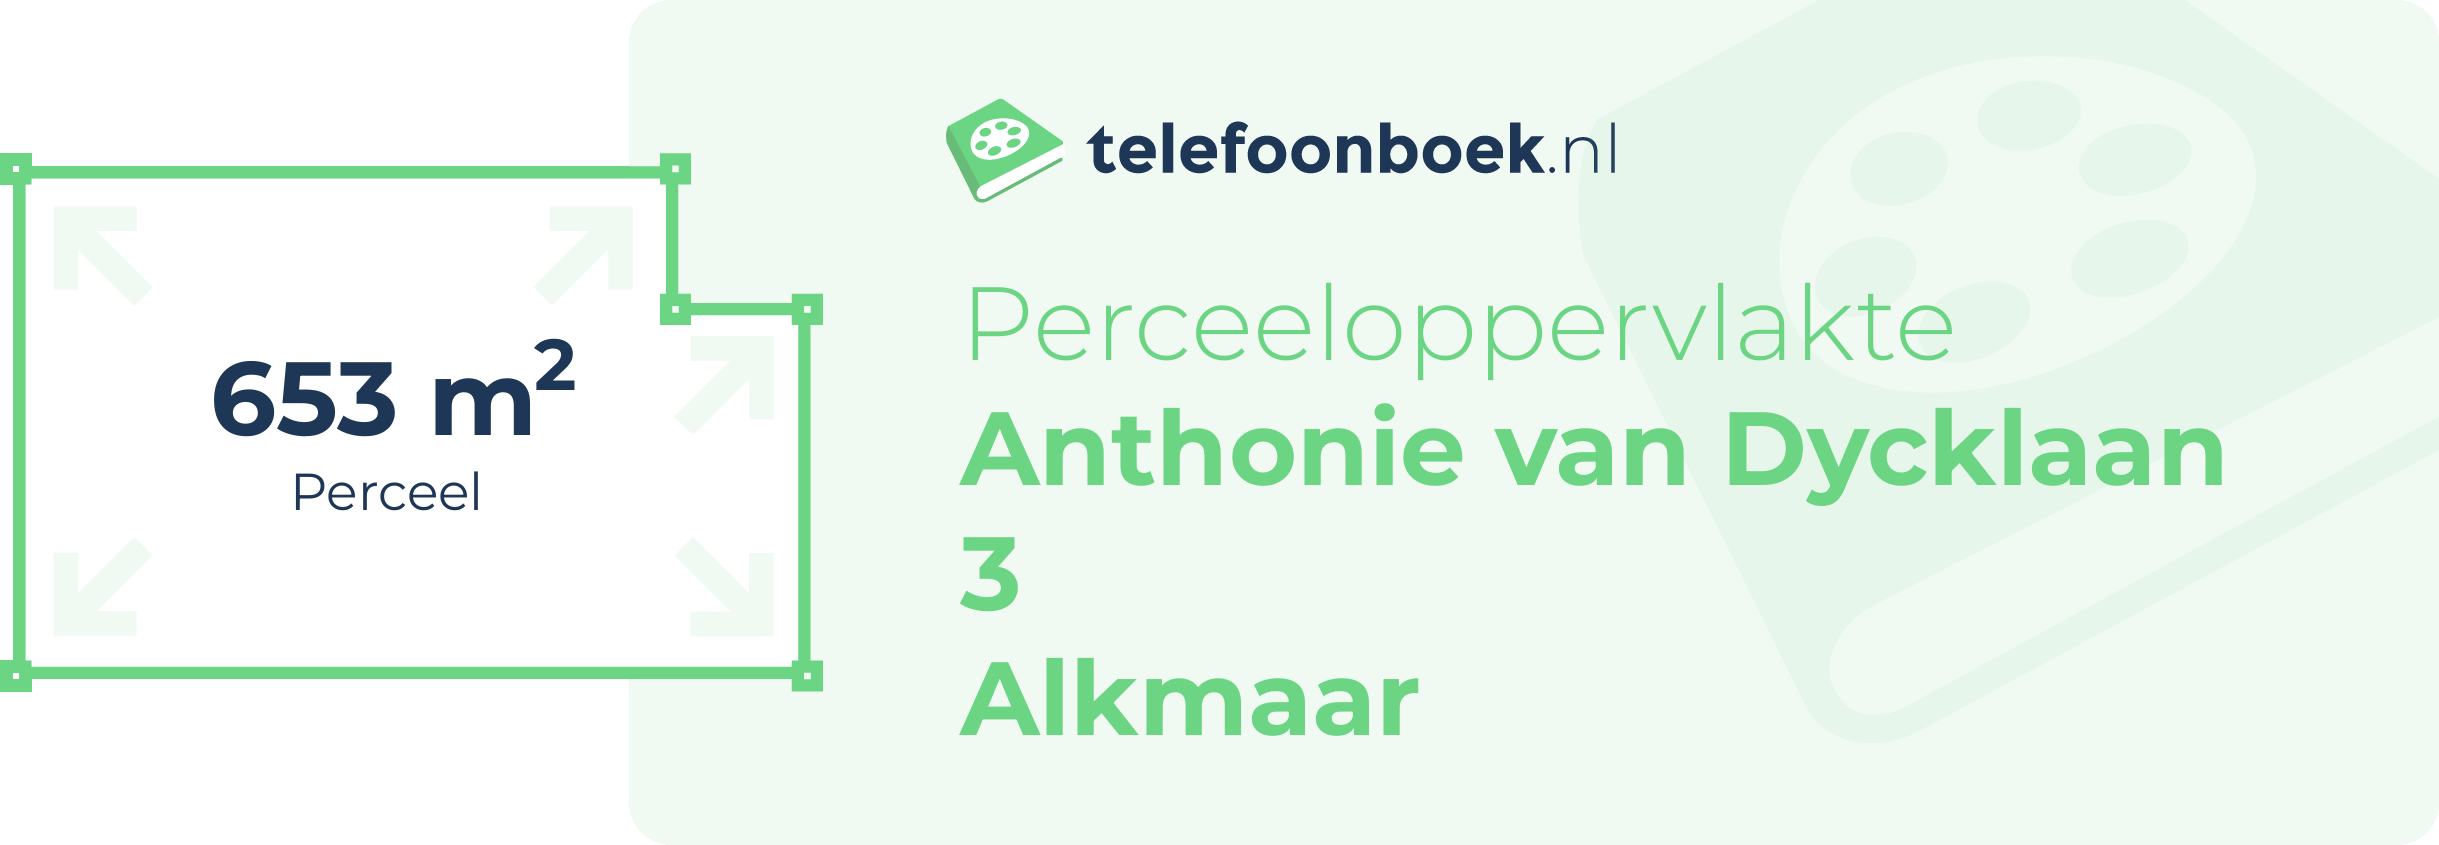 Perceeloppervlakte Anthonie Van Dycklaan 3 Alkmaar